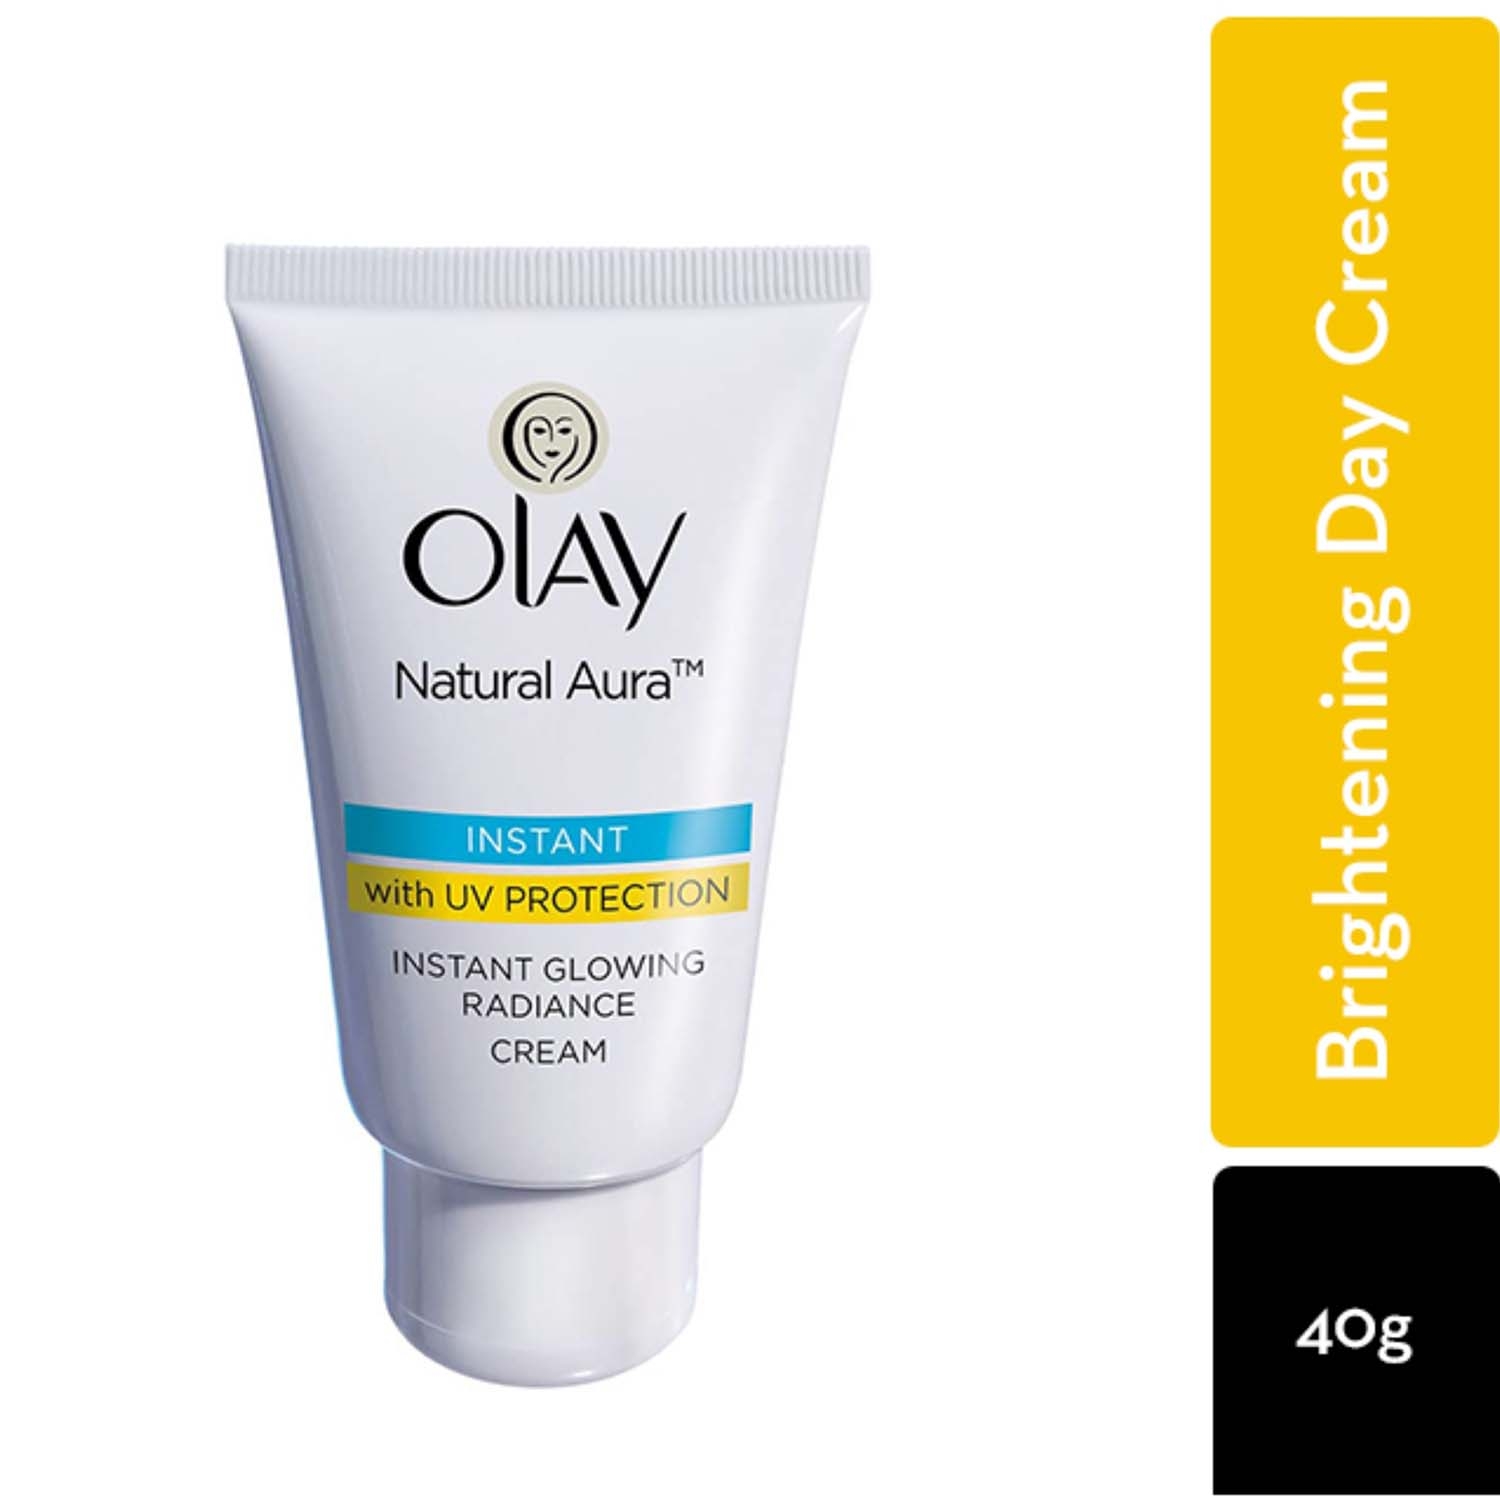 Olay | Olay Natural Aura Radiance Cream (40g)